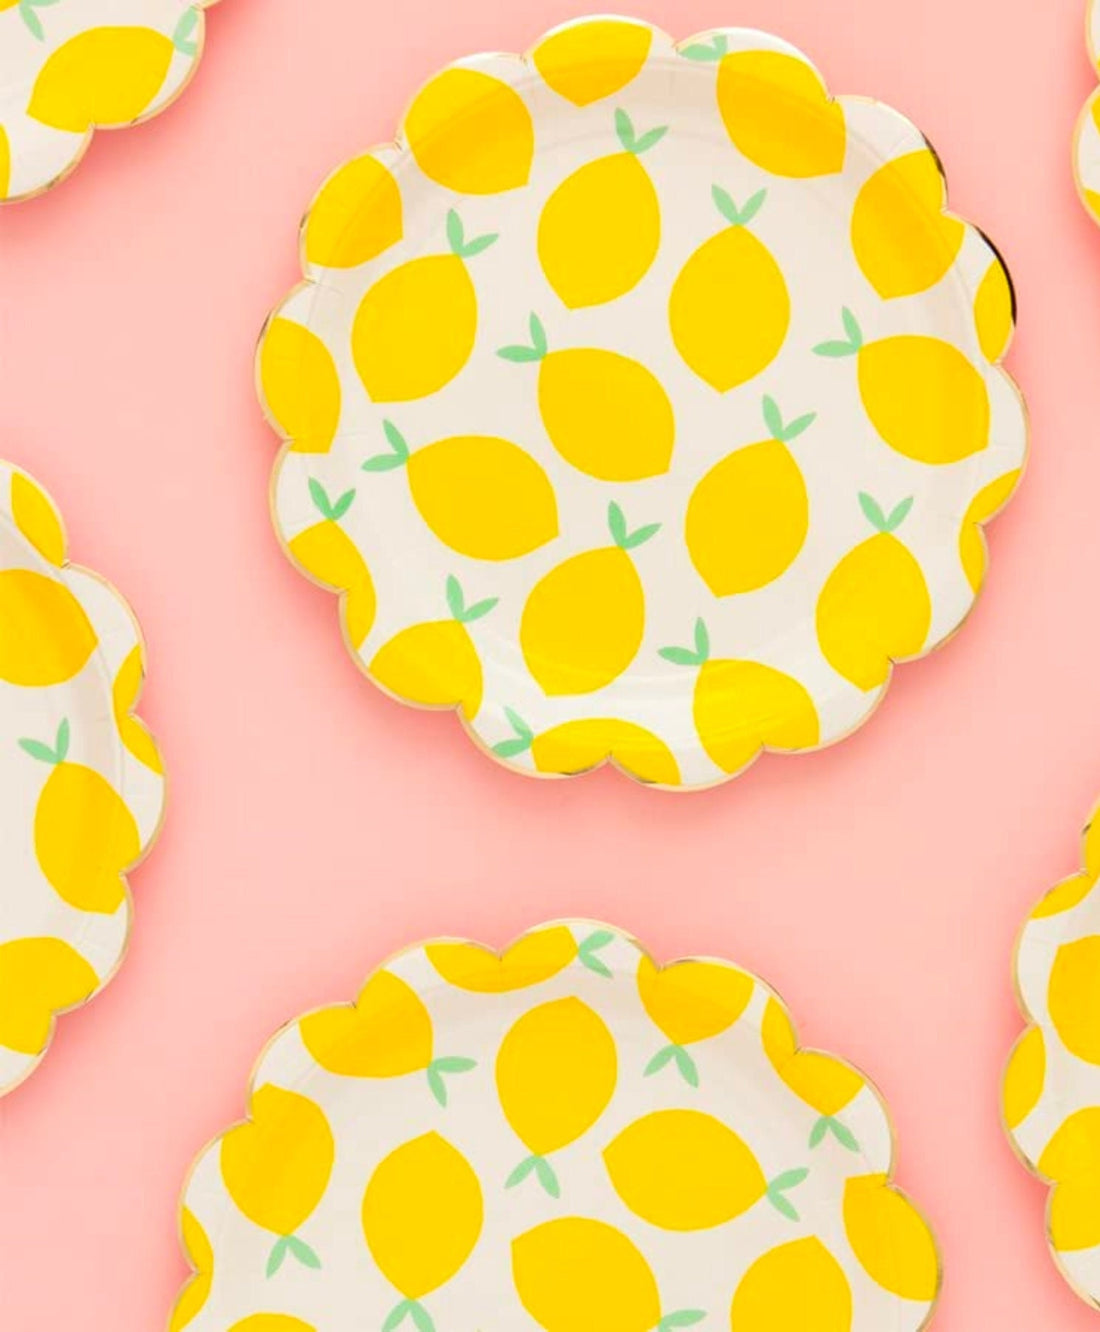 lemon themed plates, lemon themed paper plates, lemon theme plates